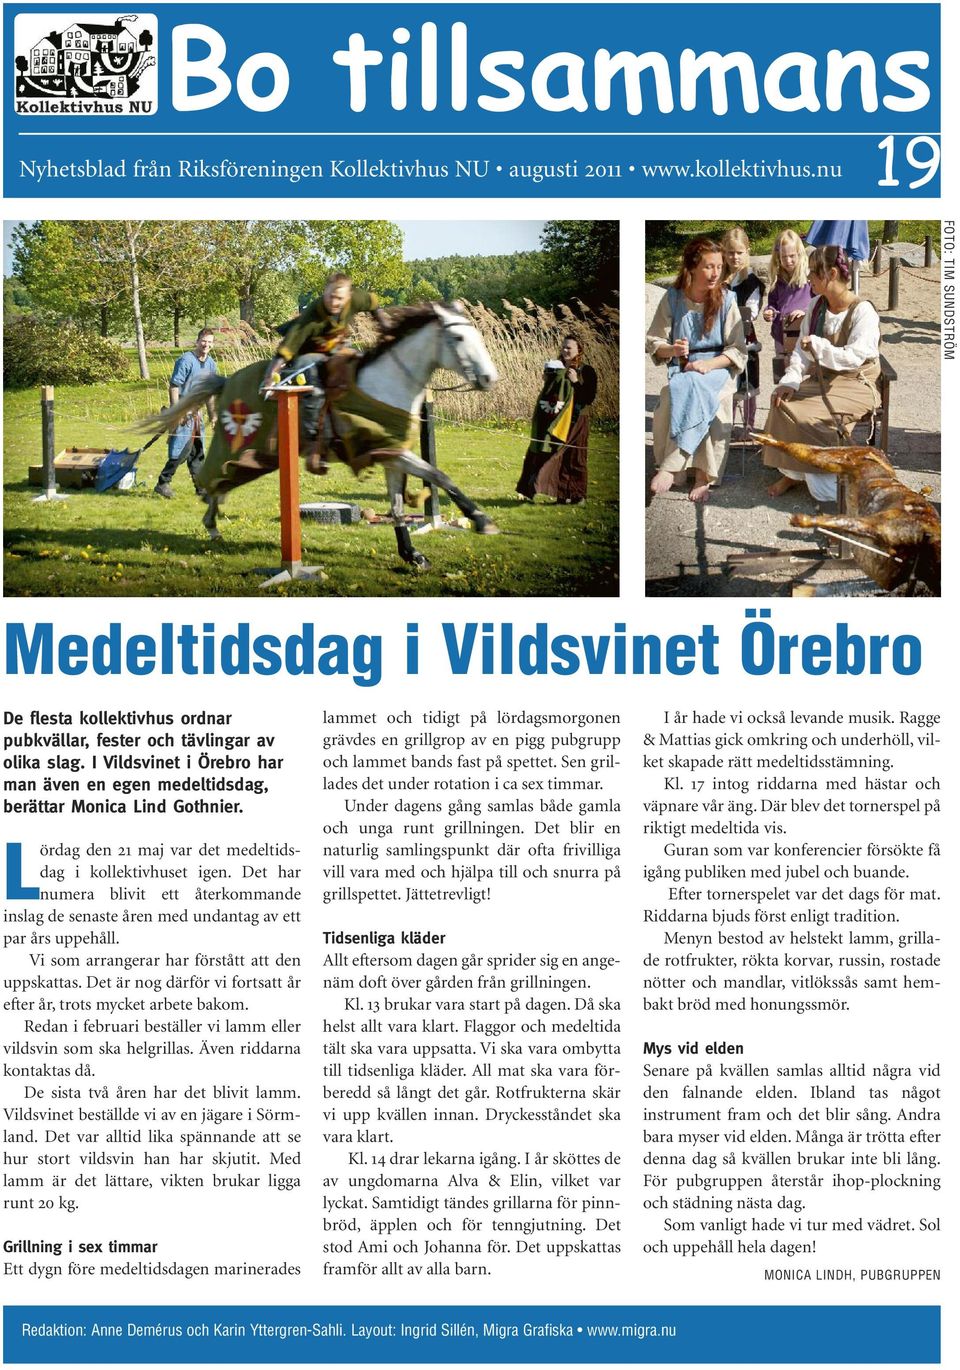 I Vildsvinet i Örebro har man även en egen medeltidsdag, berättar Monica Lind Gothnier. Lördag den 21 maj var det medeltidsdag i kollektivhuset igen.